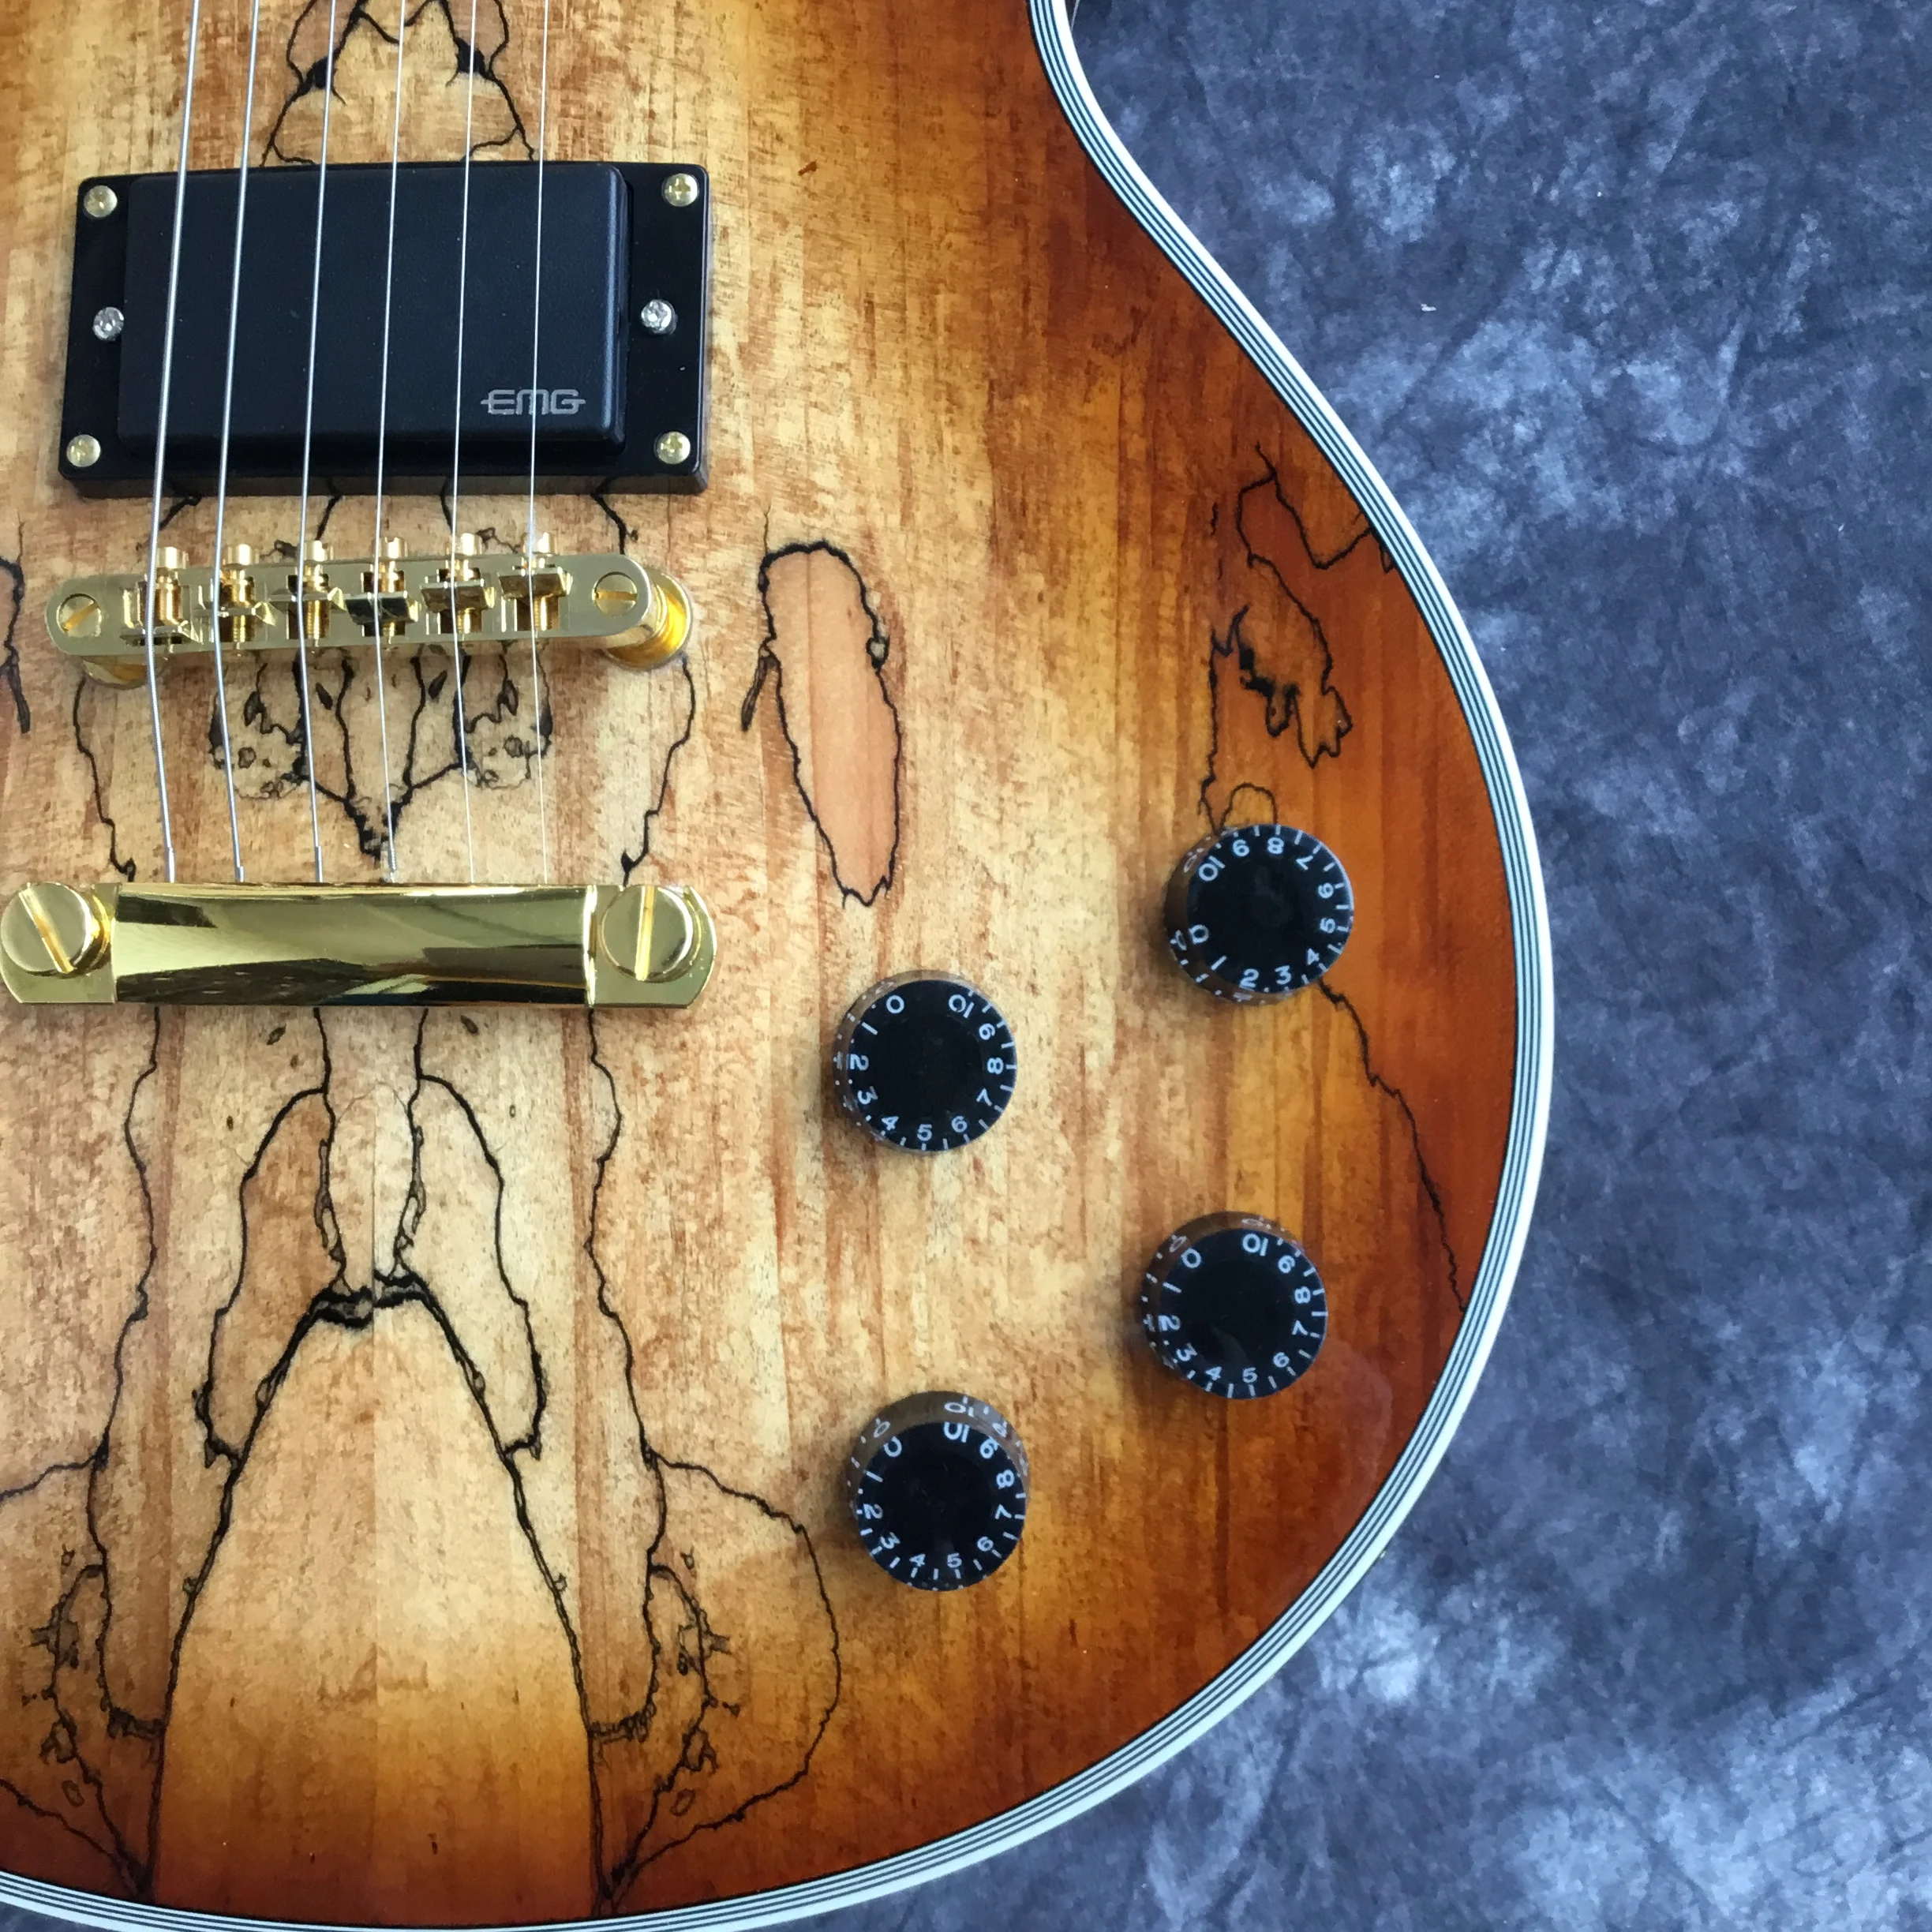 Стиль 6 иглами для электрогитары с высоким качеством пикапов. Палисандровый гриф гитары из красного дерева. Реальные фотографии